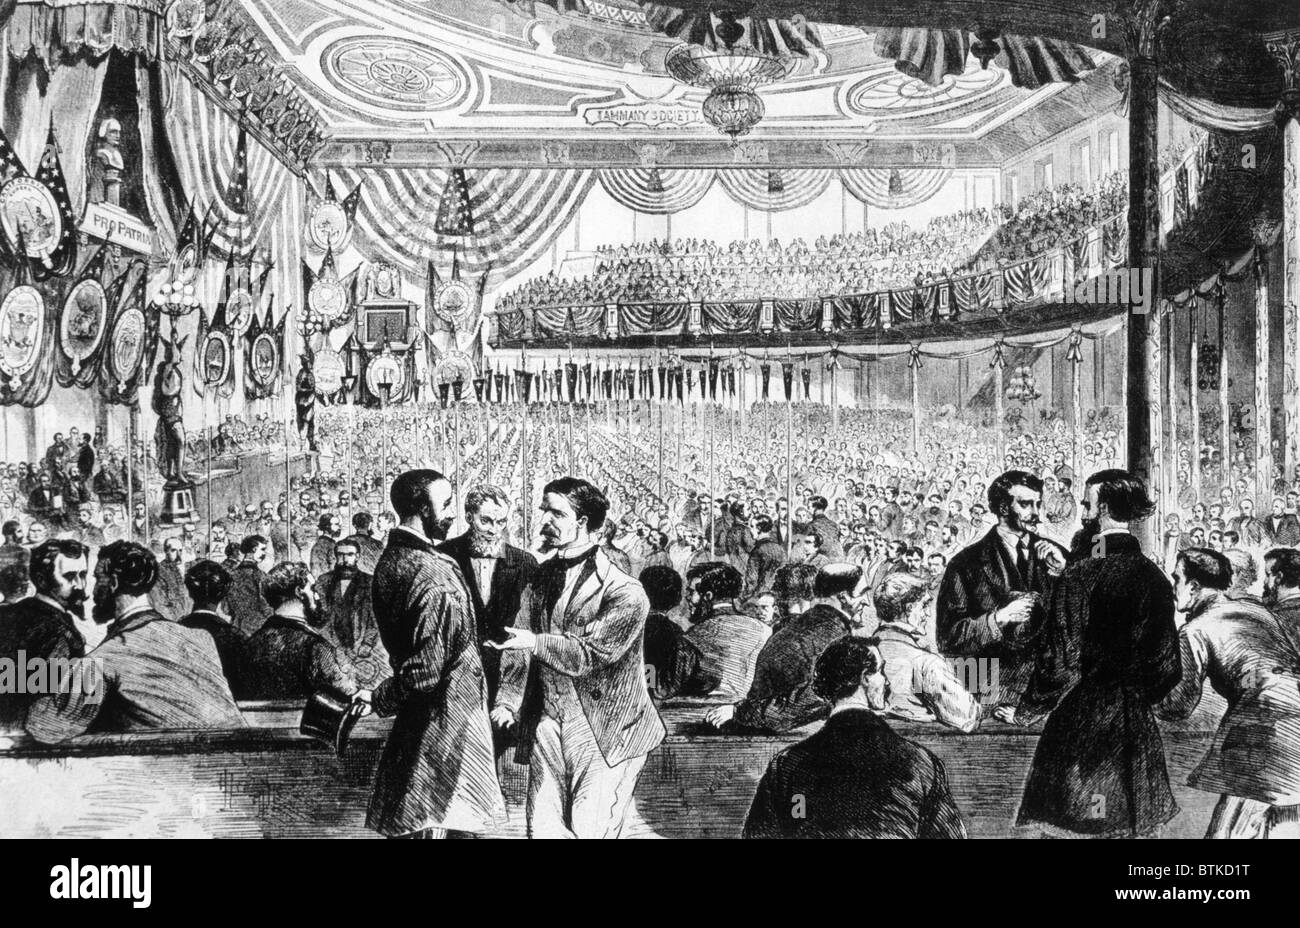 John A. Logan de l'Illinois nomme Ulysses S. Grant pour le président à la convention nationale républicaine à Chicago, 1868 Banque D'Images